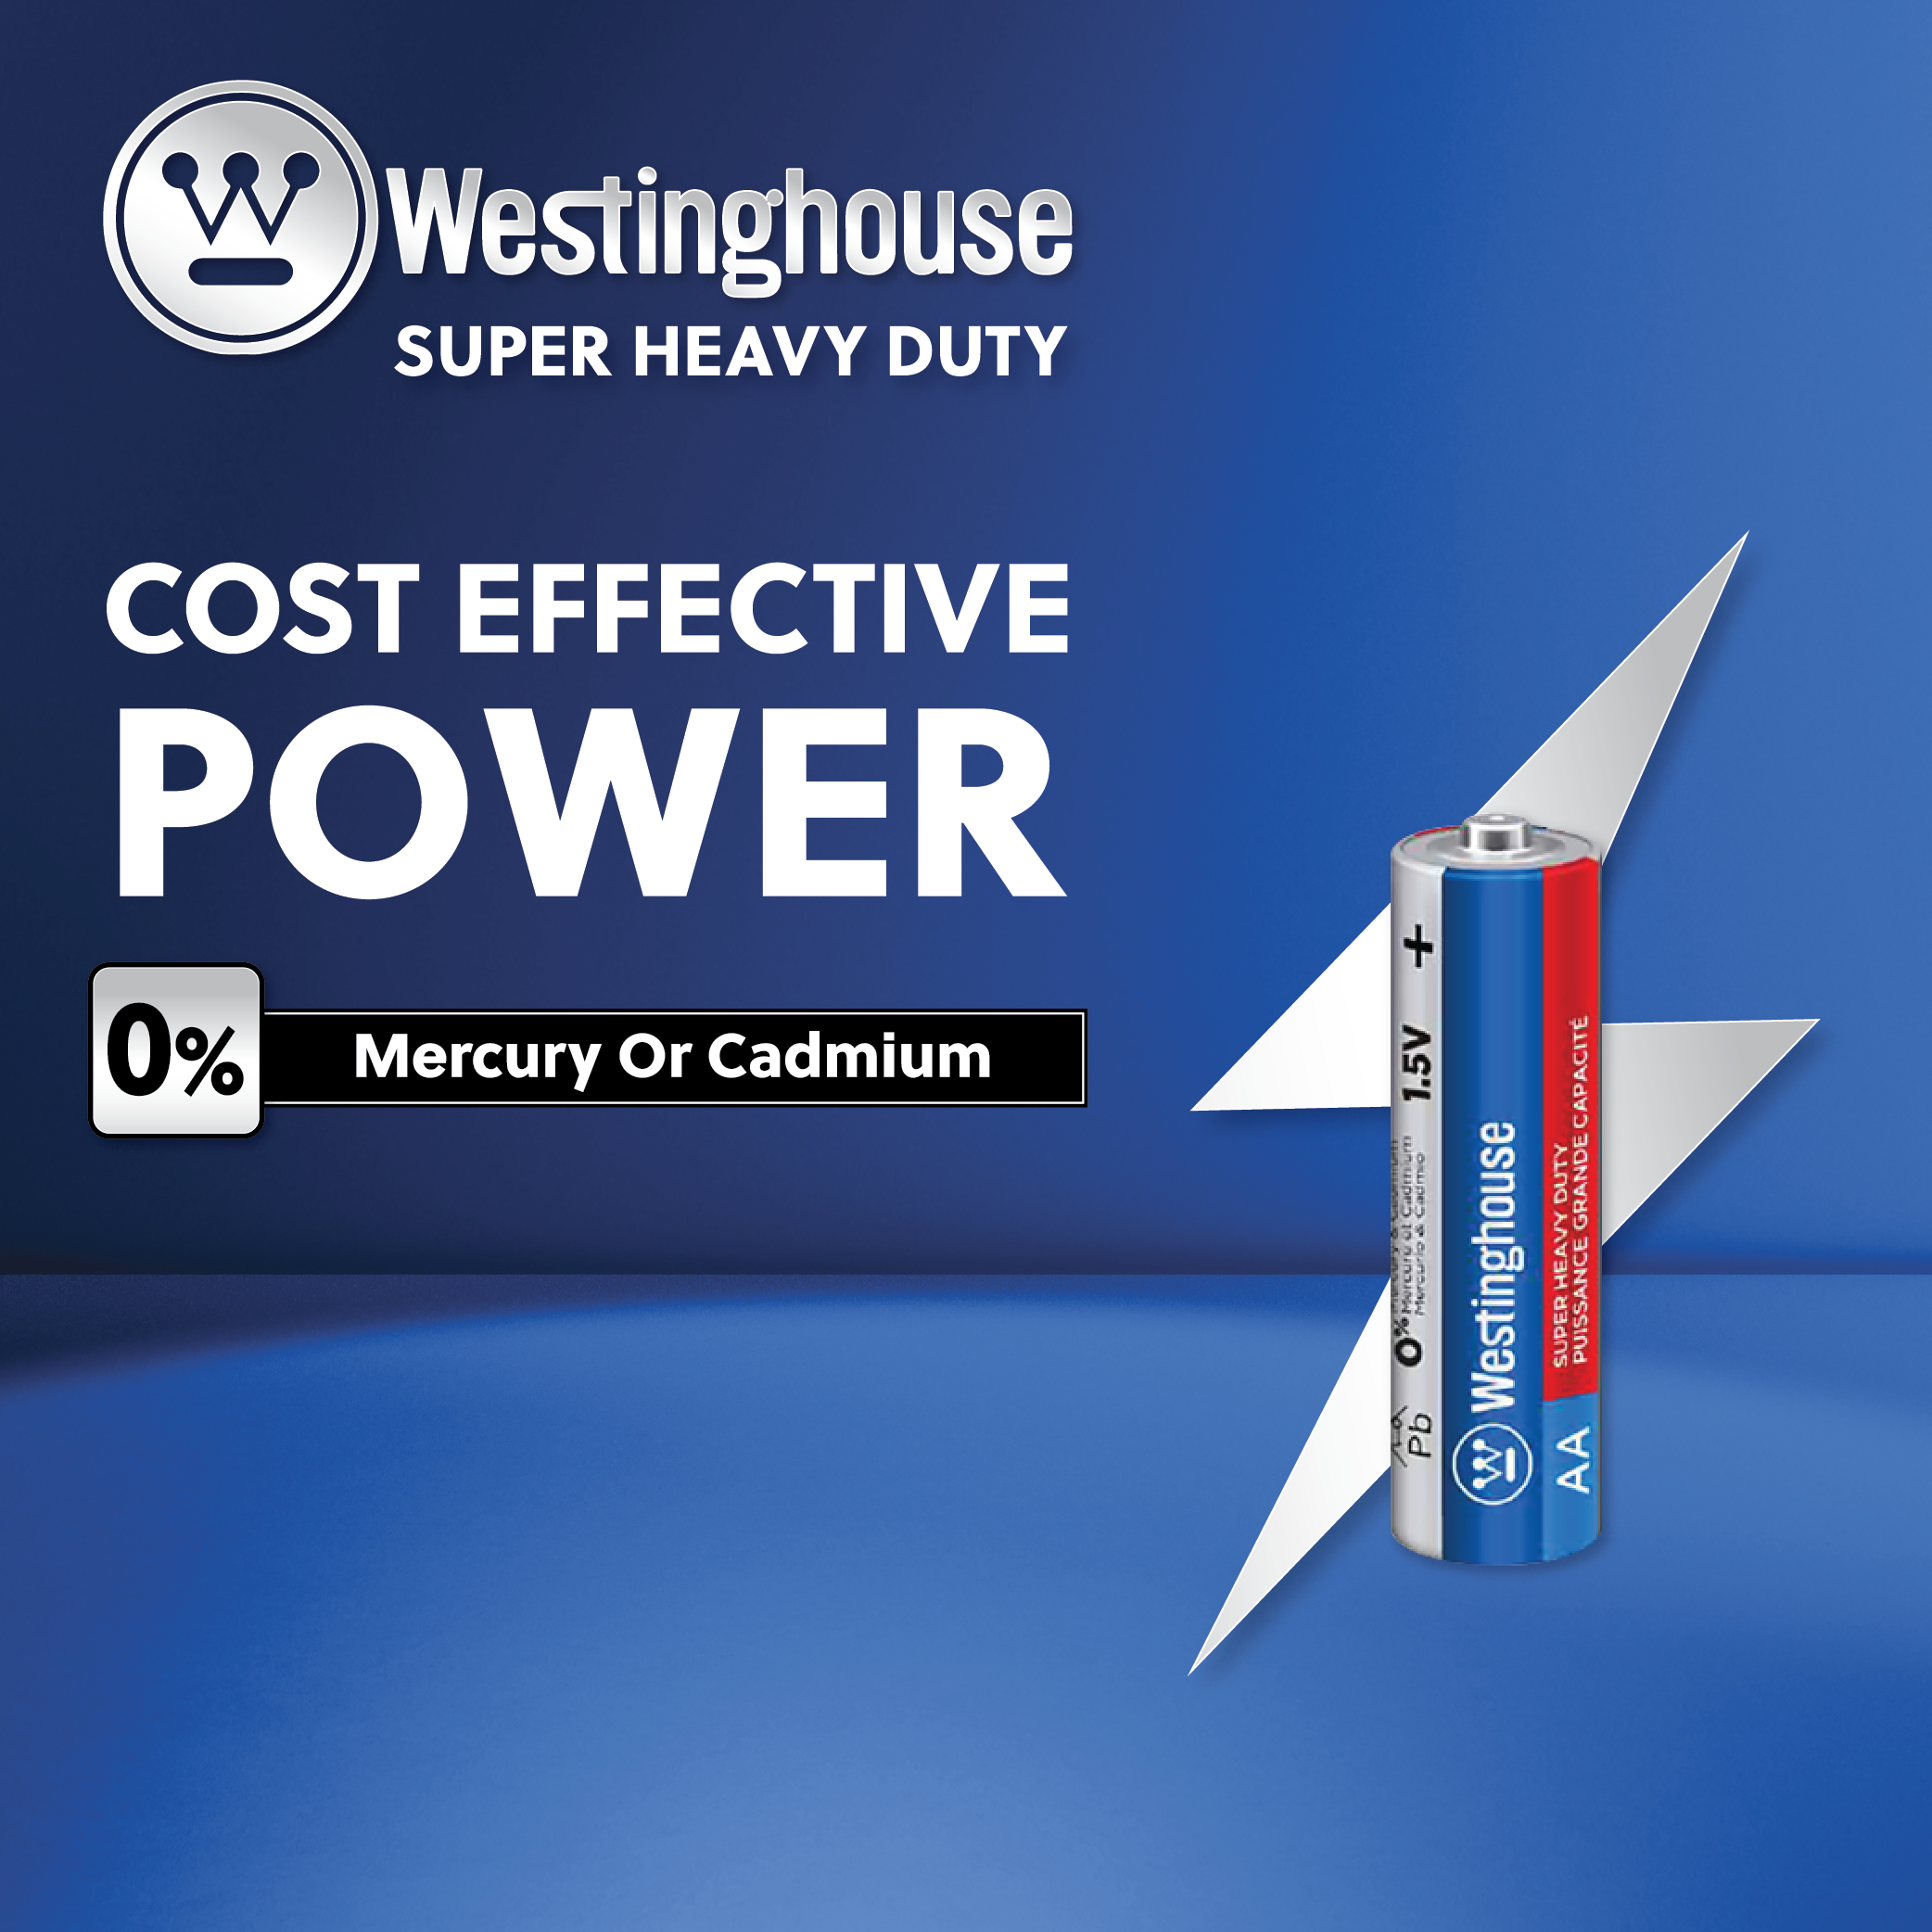 Westinghouse AAA Super Heavy Duty 4pk